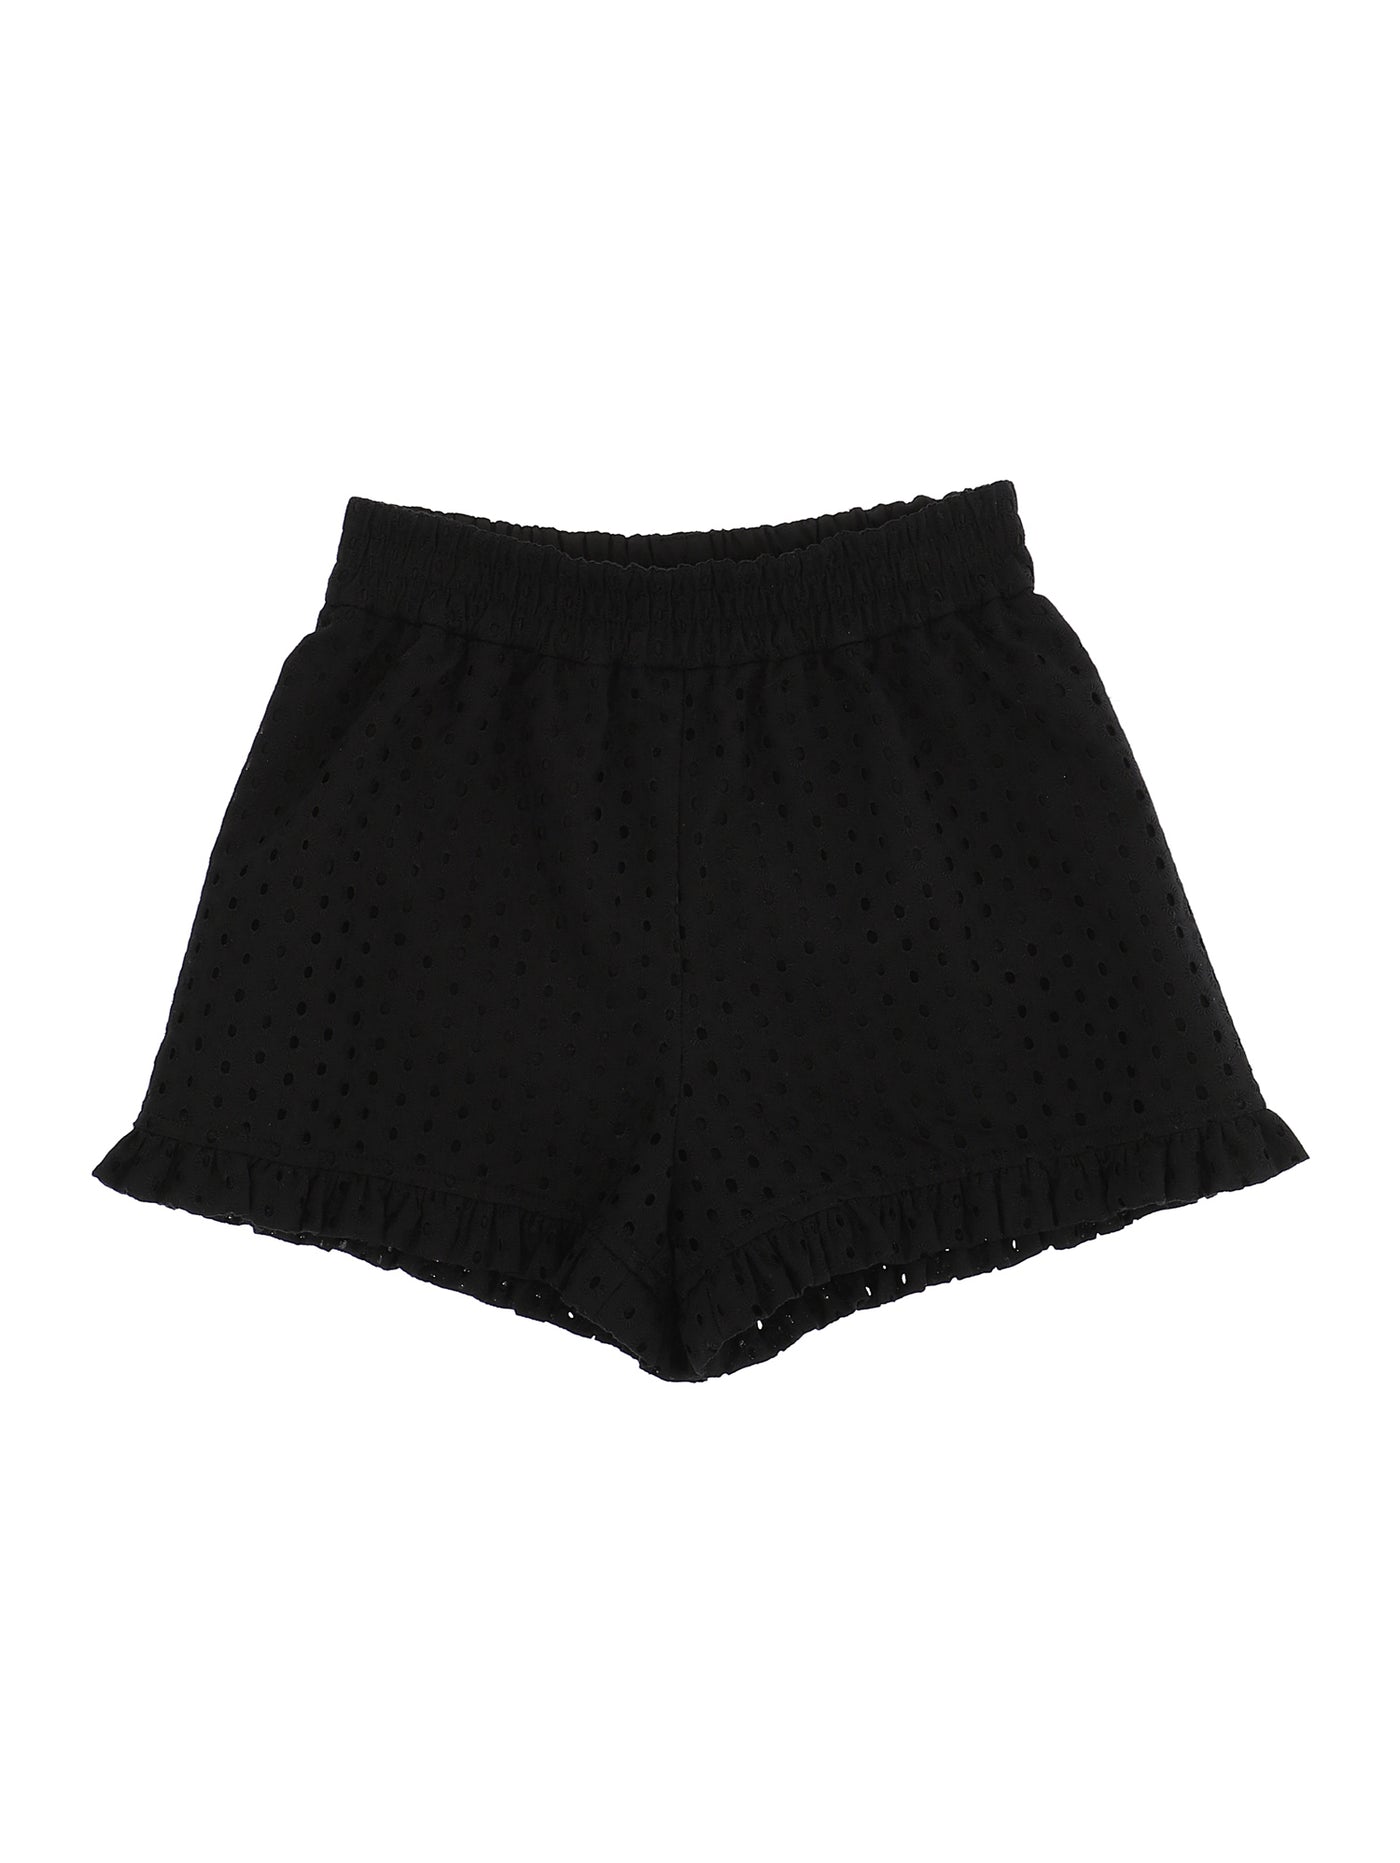 Monnalisa - Polka dot lace shorts